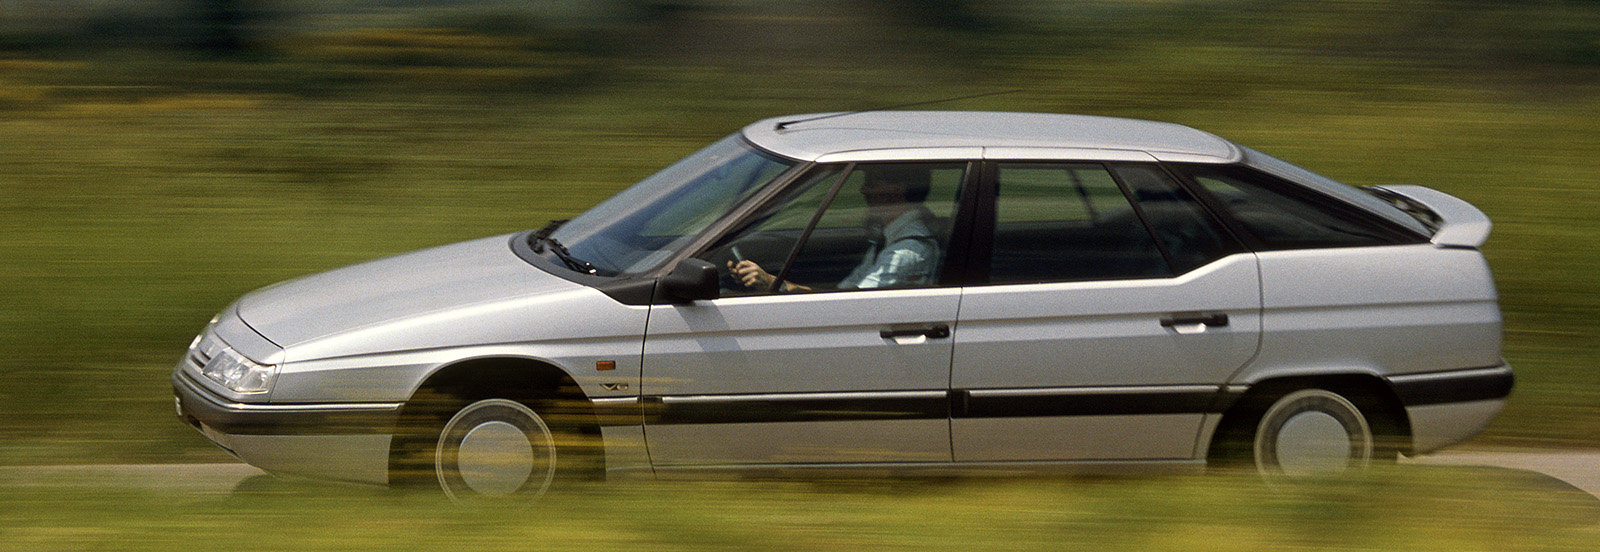 Coche del día: Citroën XM V6 (1989)